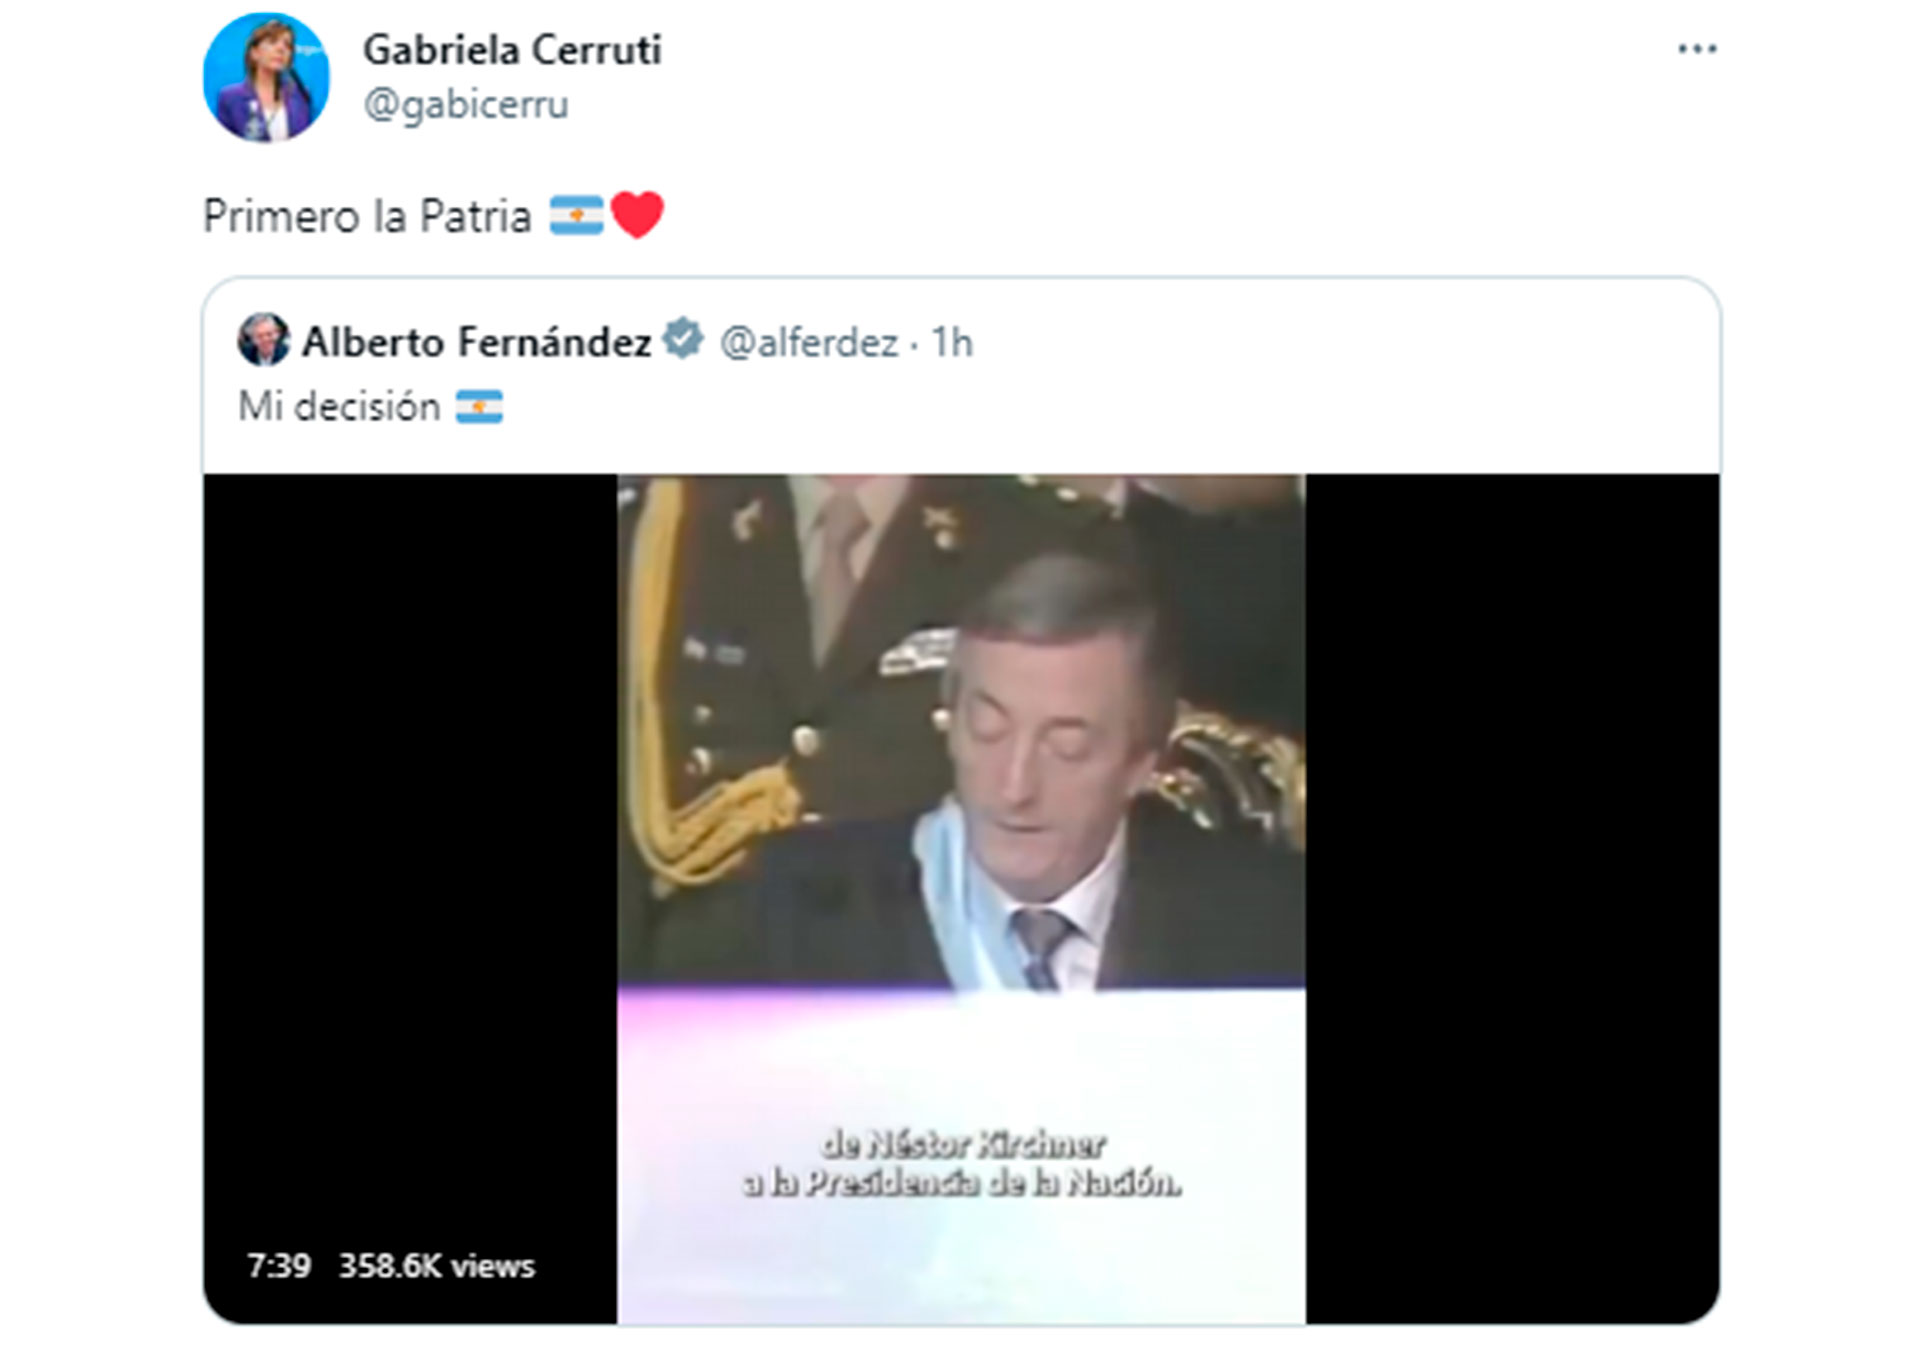 El tuit de la portavoz presidencial, Gabriela Cerruti